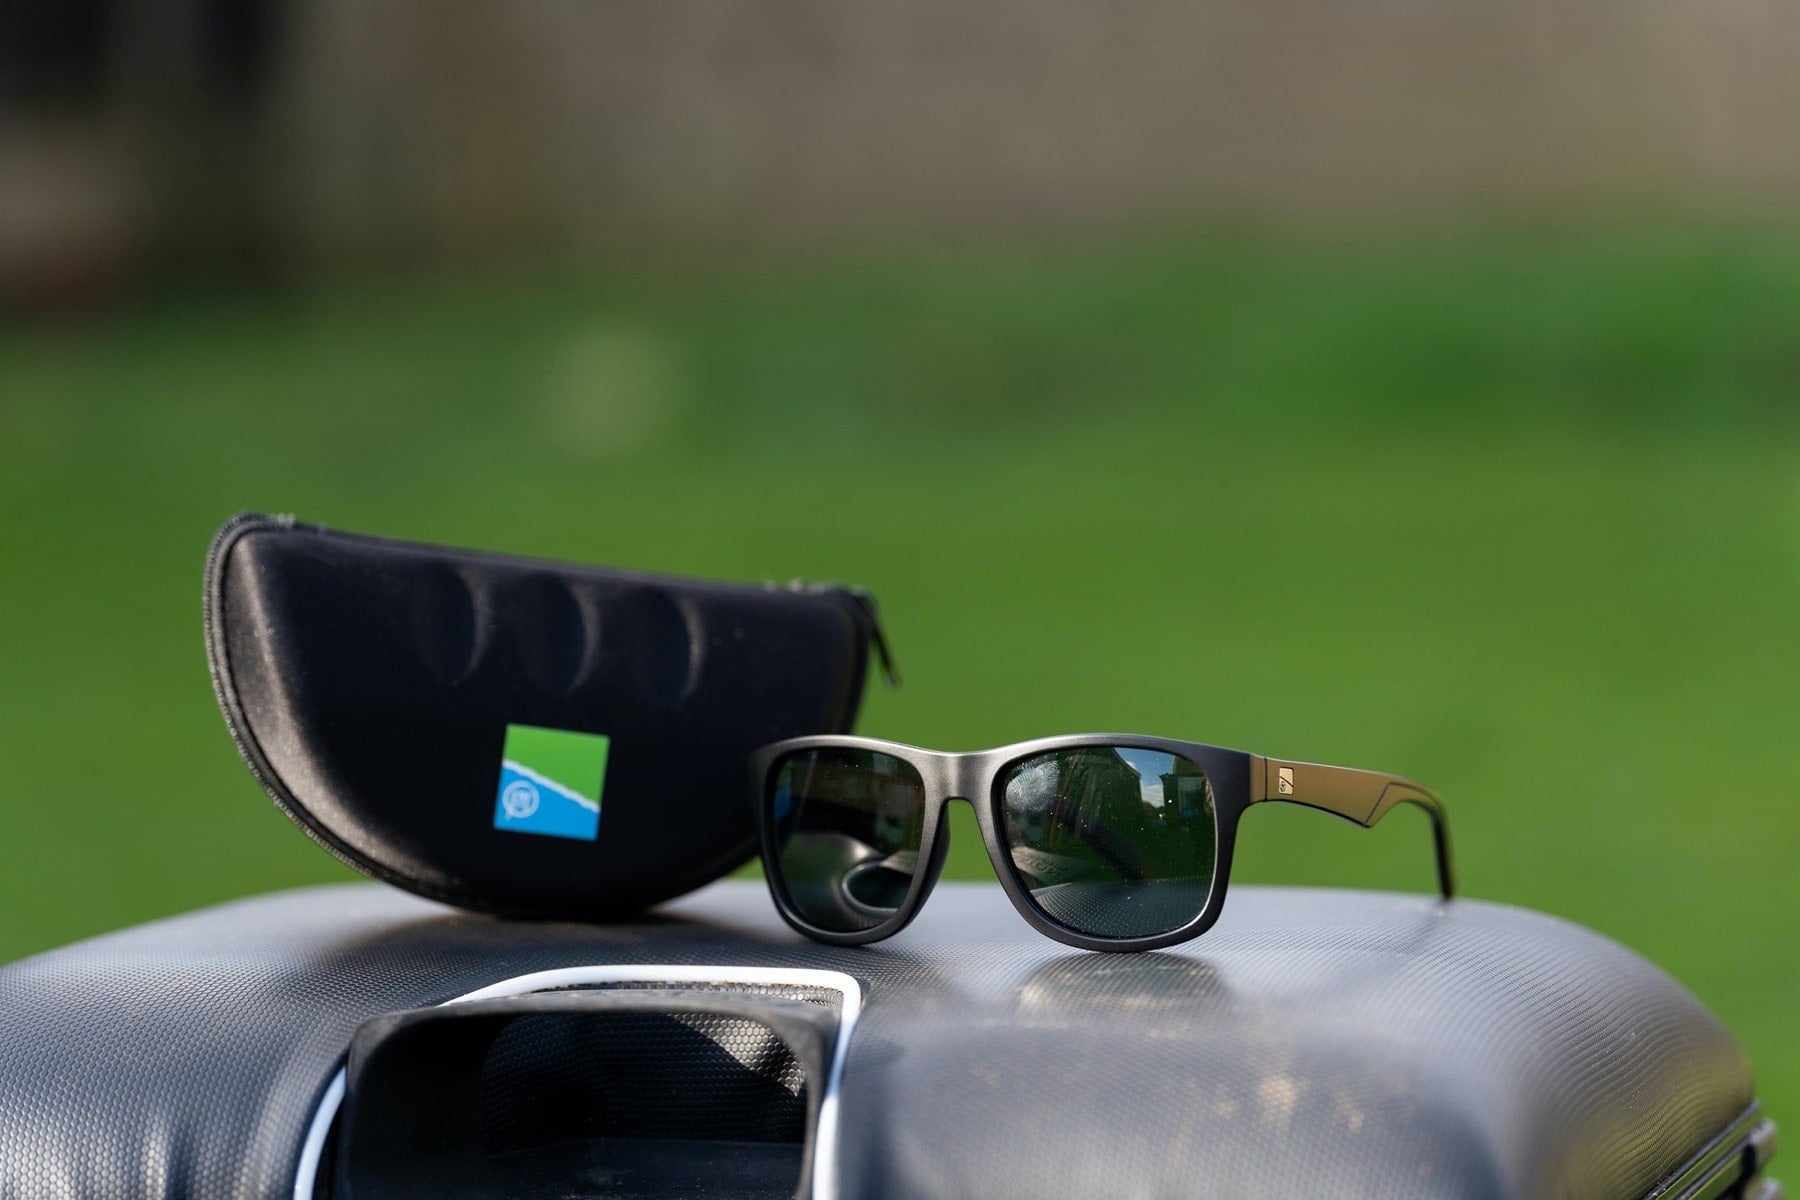 Preston inception leisure sunglasses green lens